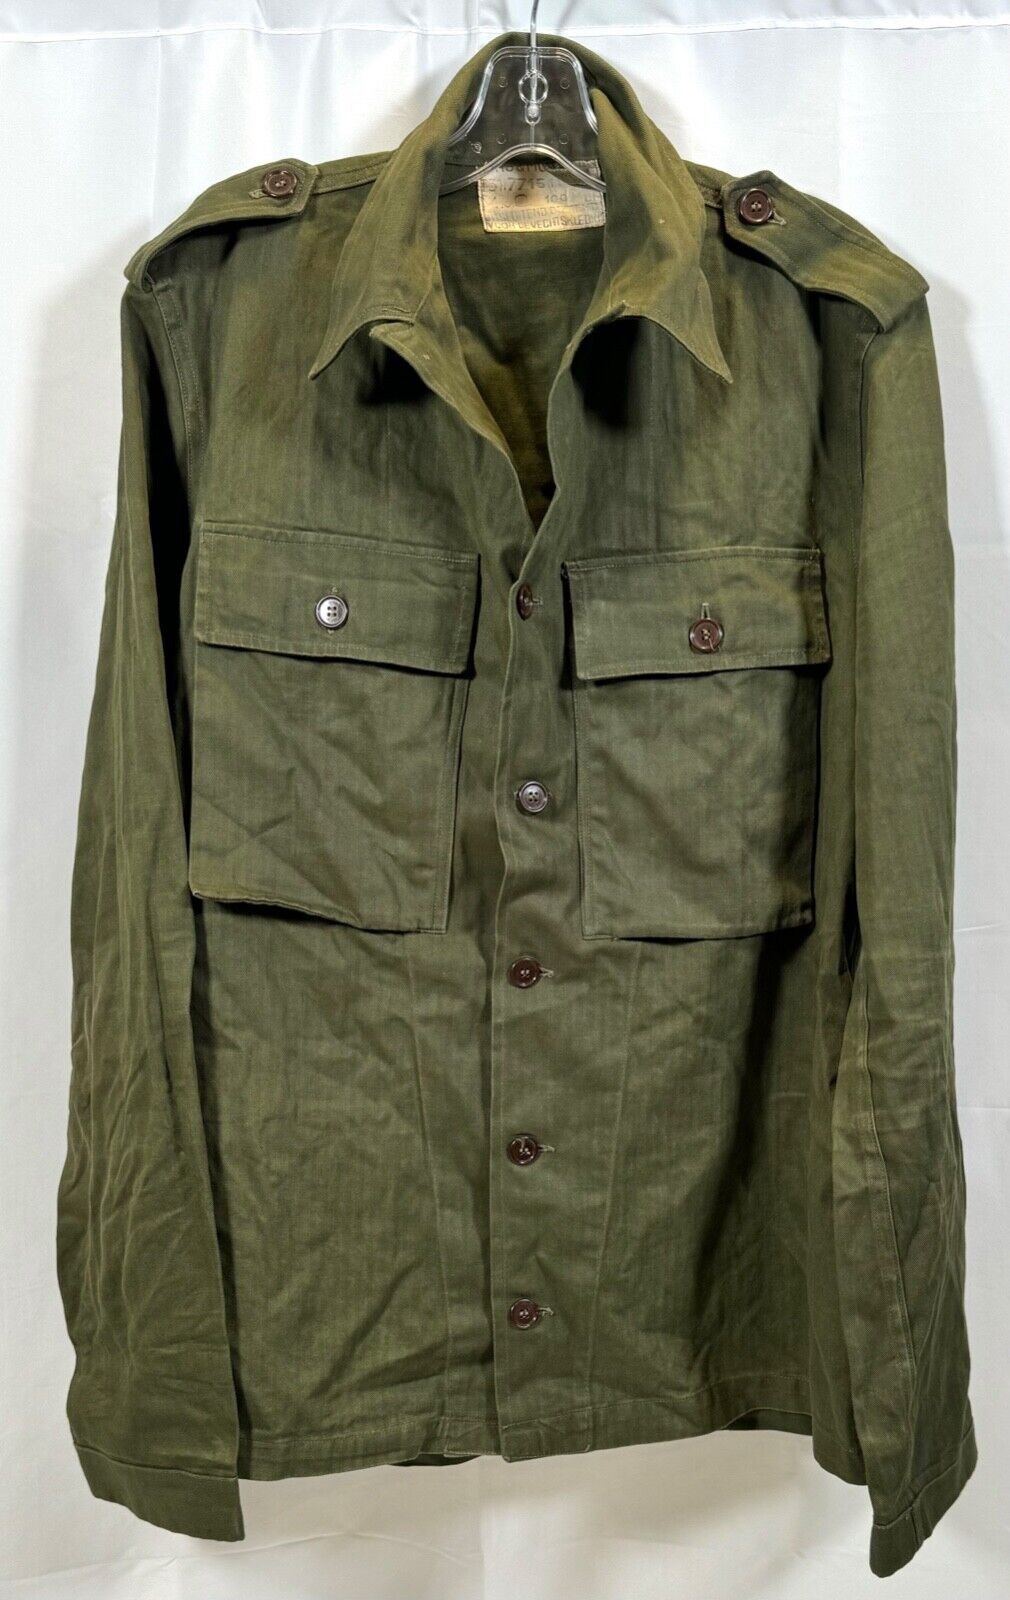 Dutch Army HBT Fatigue Shirt Jacket Herring Bone Twill OD Green Size XL